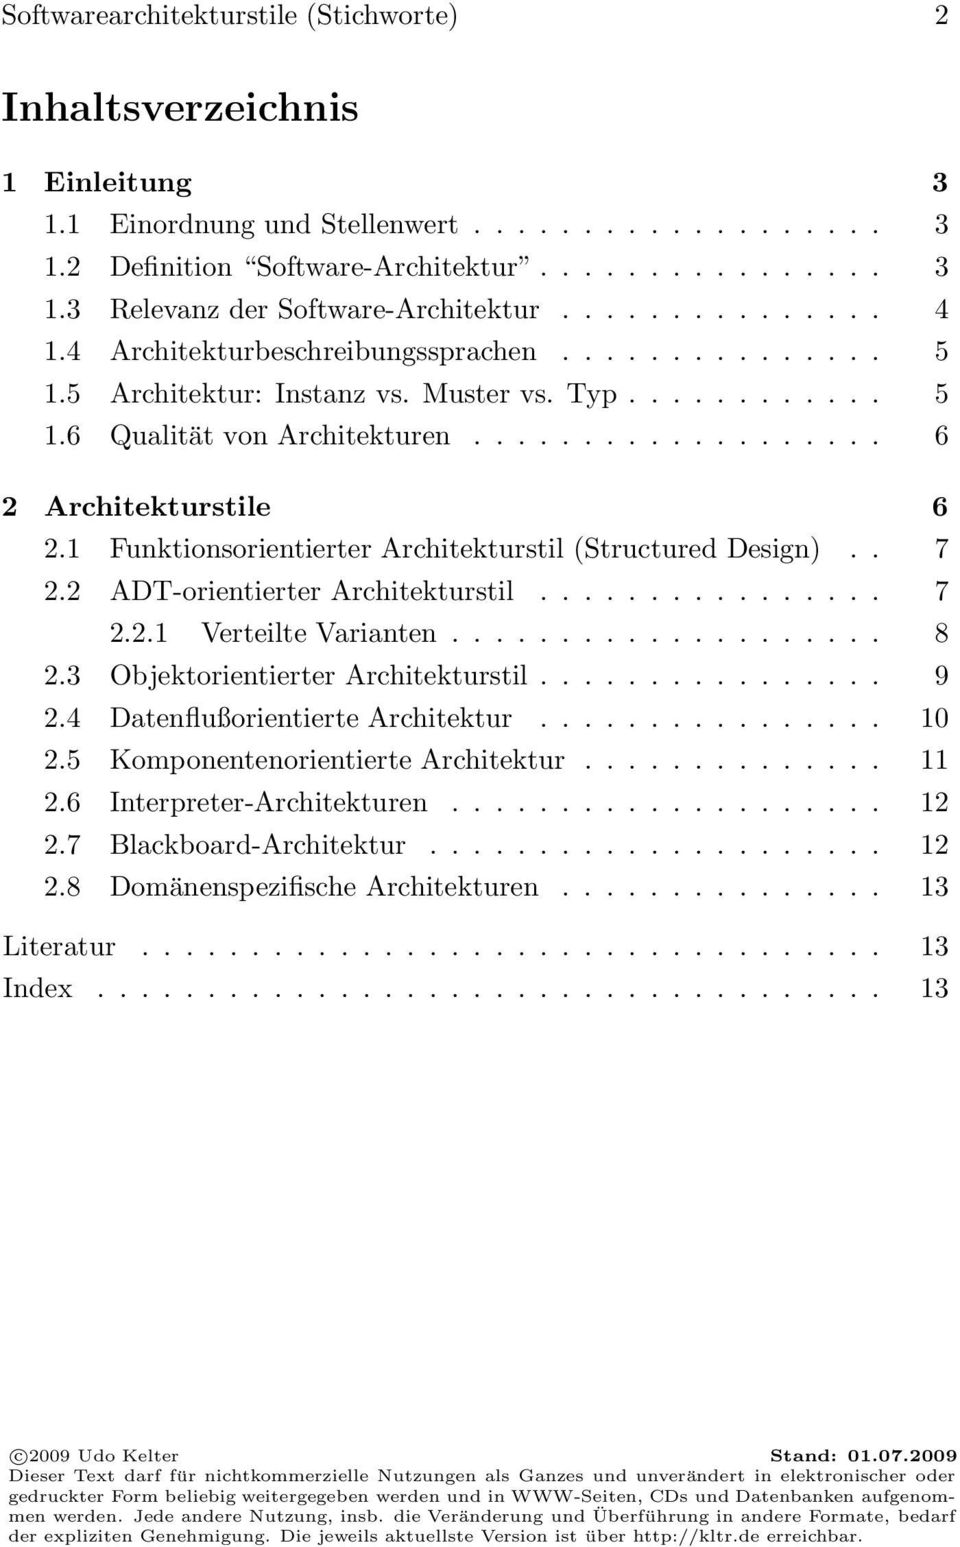 1 Funktionsorientierter Architekturstil (Structured Design).. 7 2.2 ADT-orientierter Architekturstil................ 7 2.2.1 Verteilte Varianten.................... 8 2.